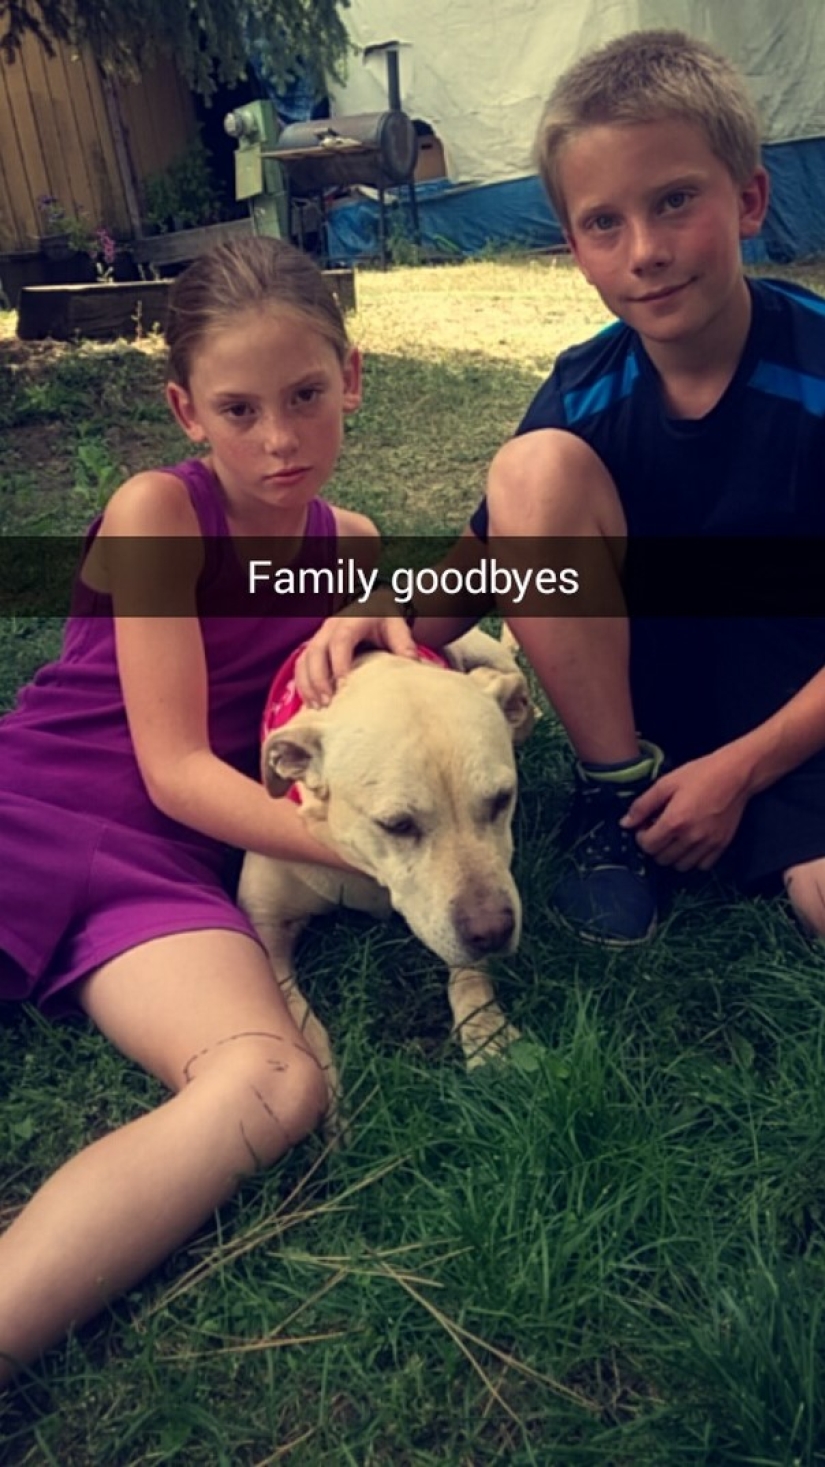 La niña organizó un día de despedida para su amado perro gravemente enfermo antes de la eutanasia